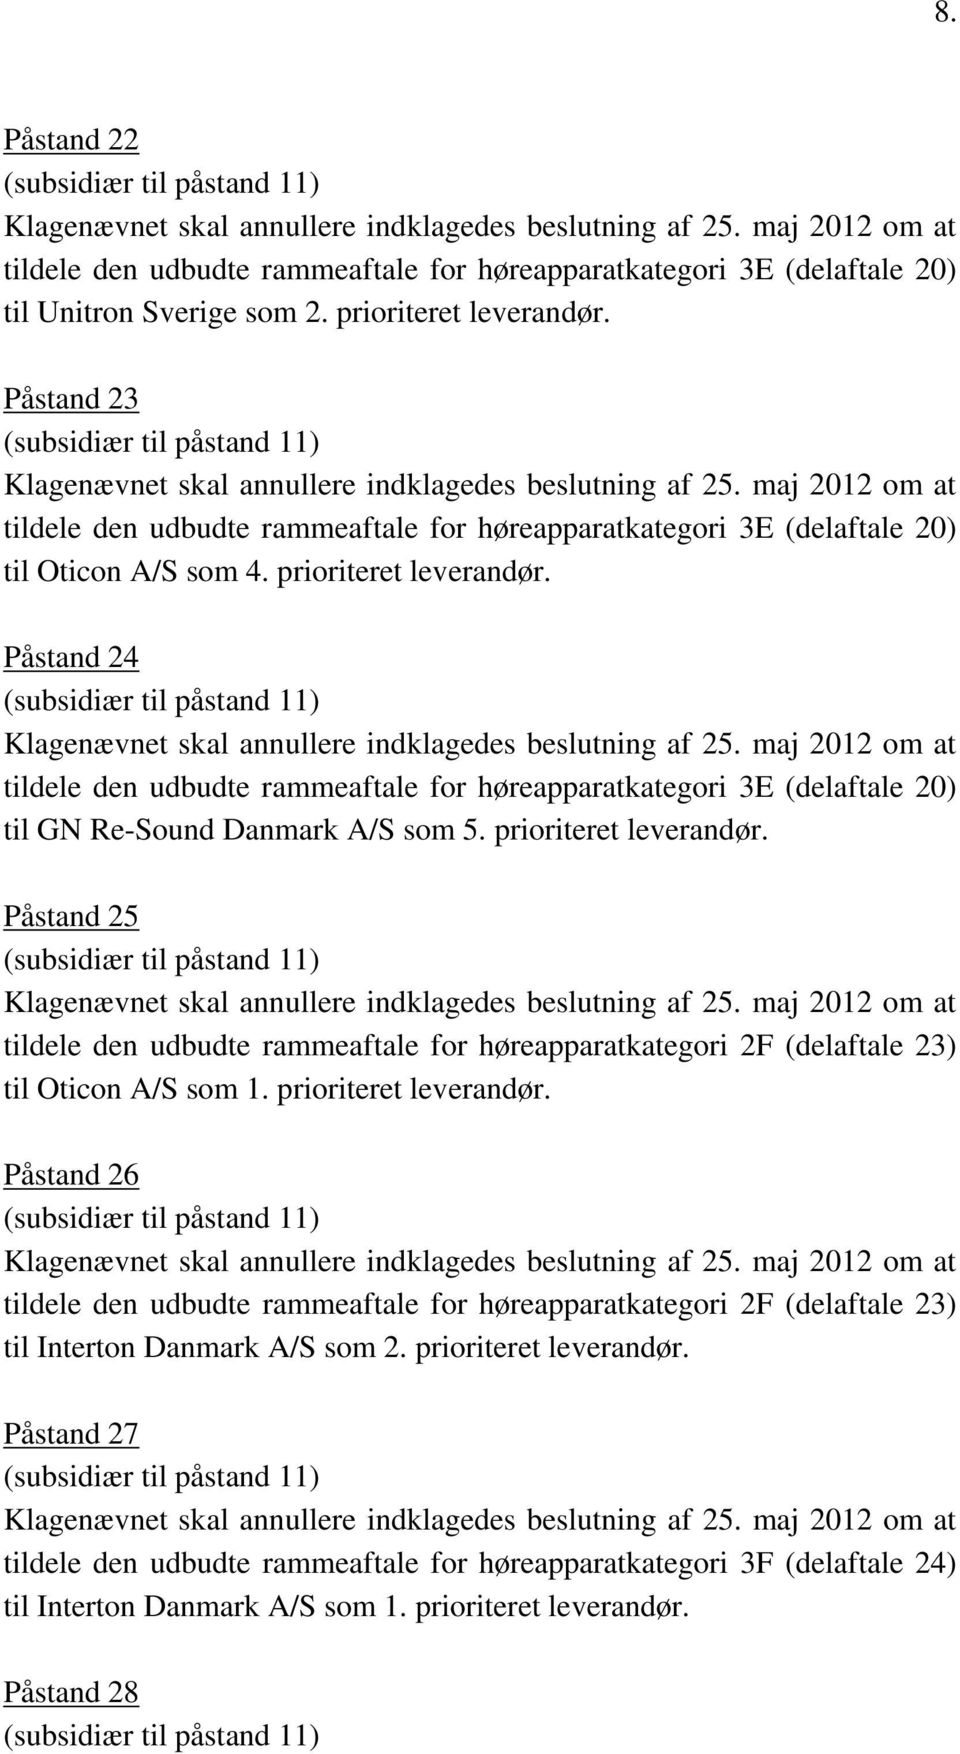 Påstand 24 tildele den udbudte rammeaftale for høreapparatkategori 3E (delaftale 20) til GN Re-Sound Danmark A/S som 5. prioriteret leverandør.